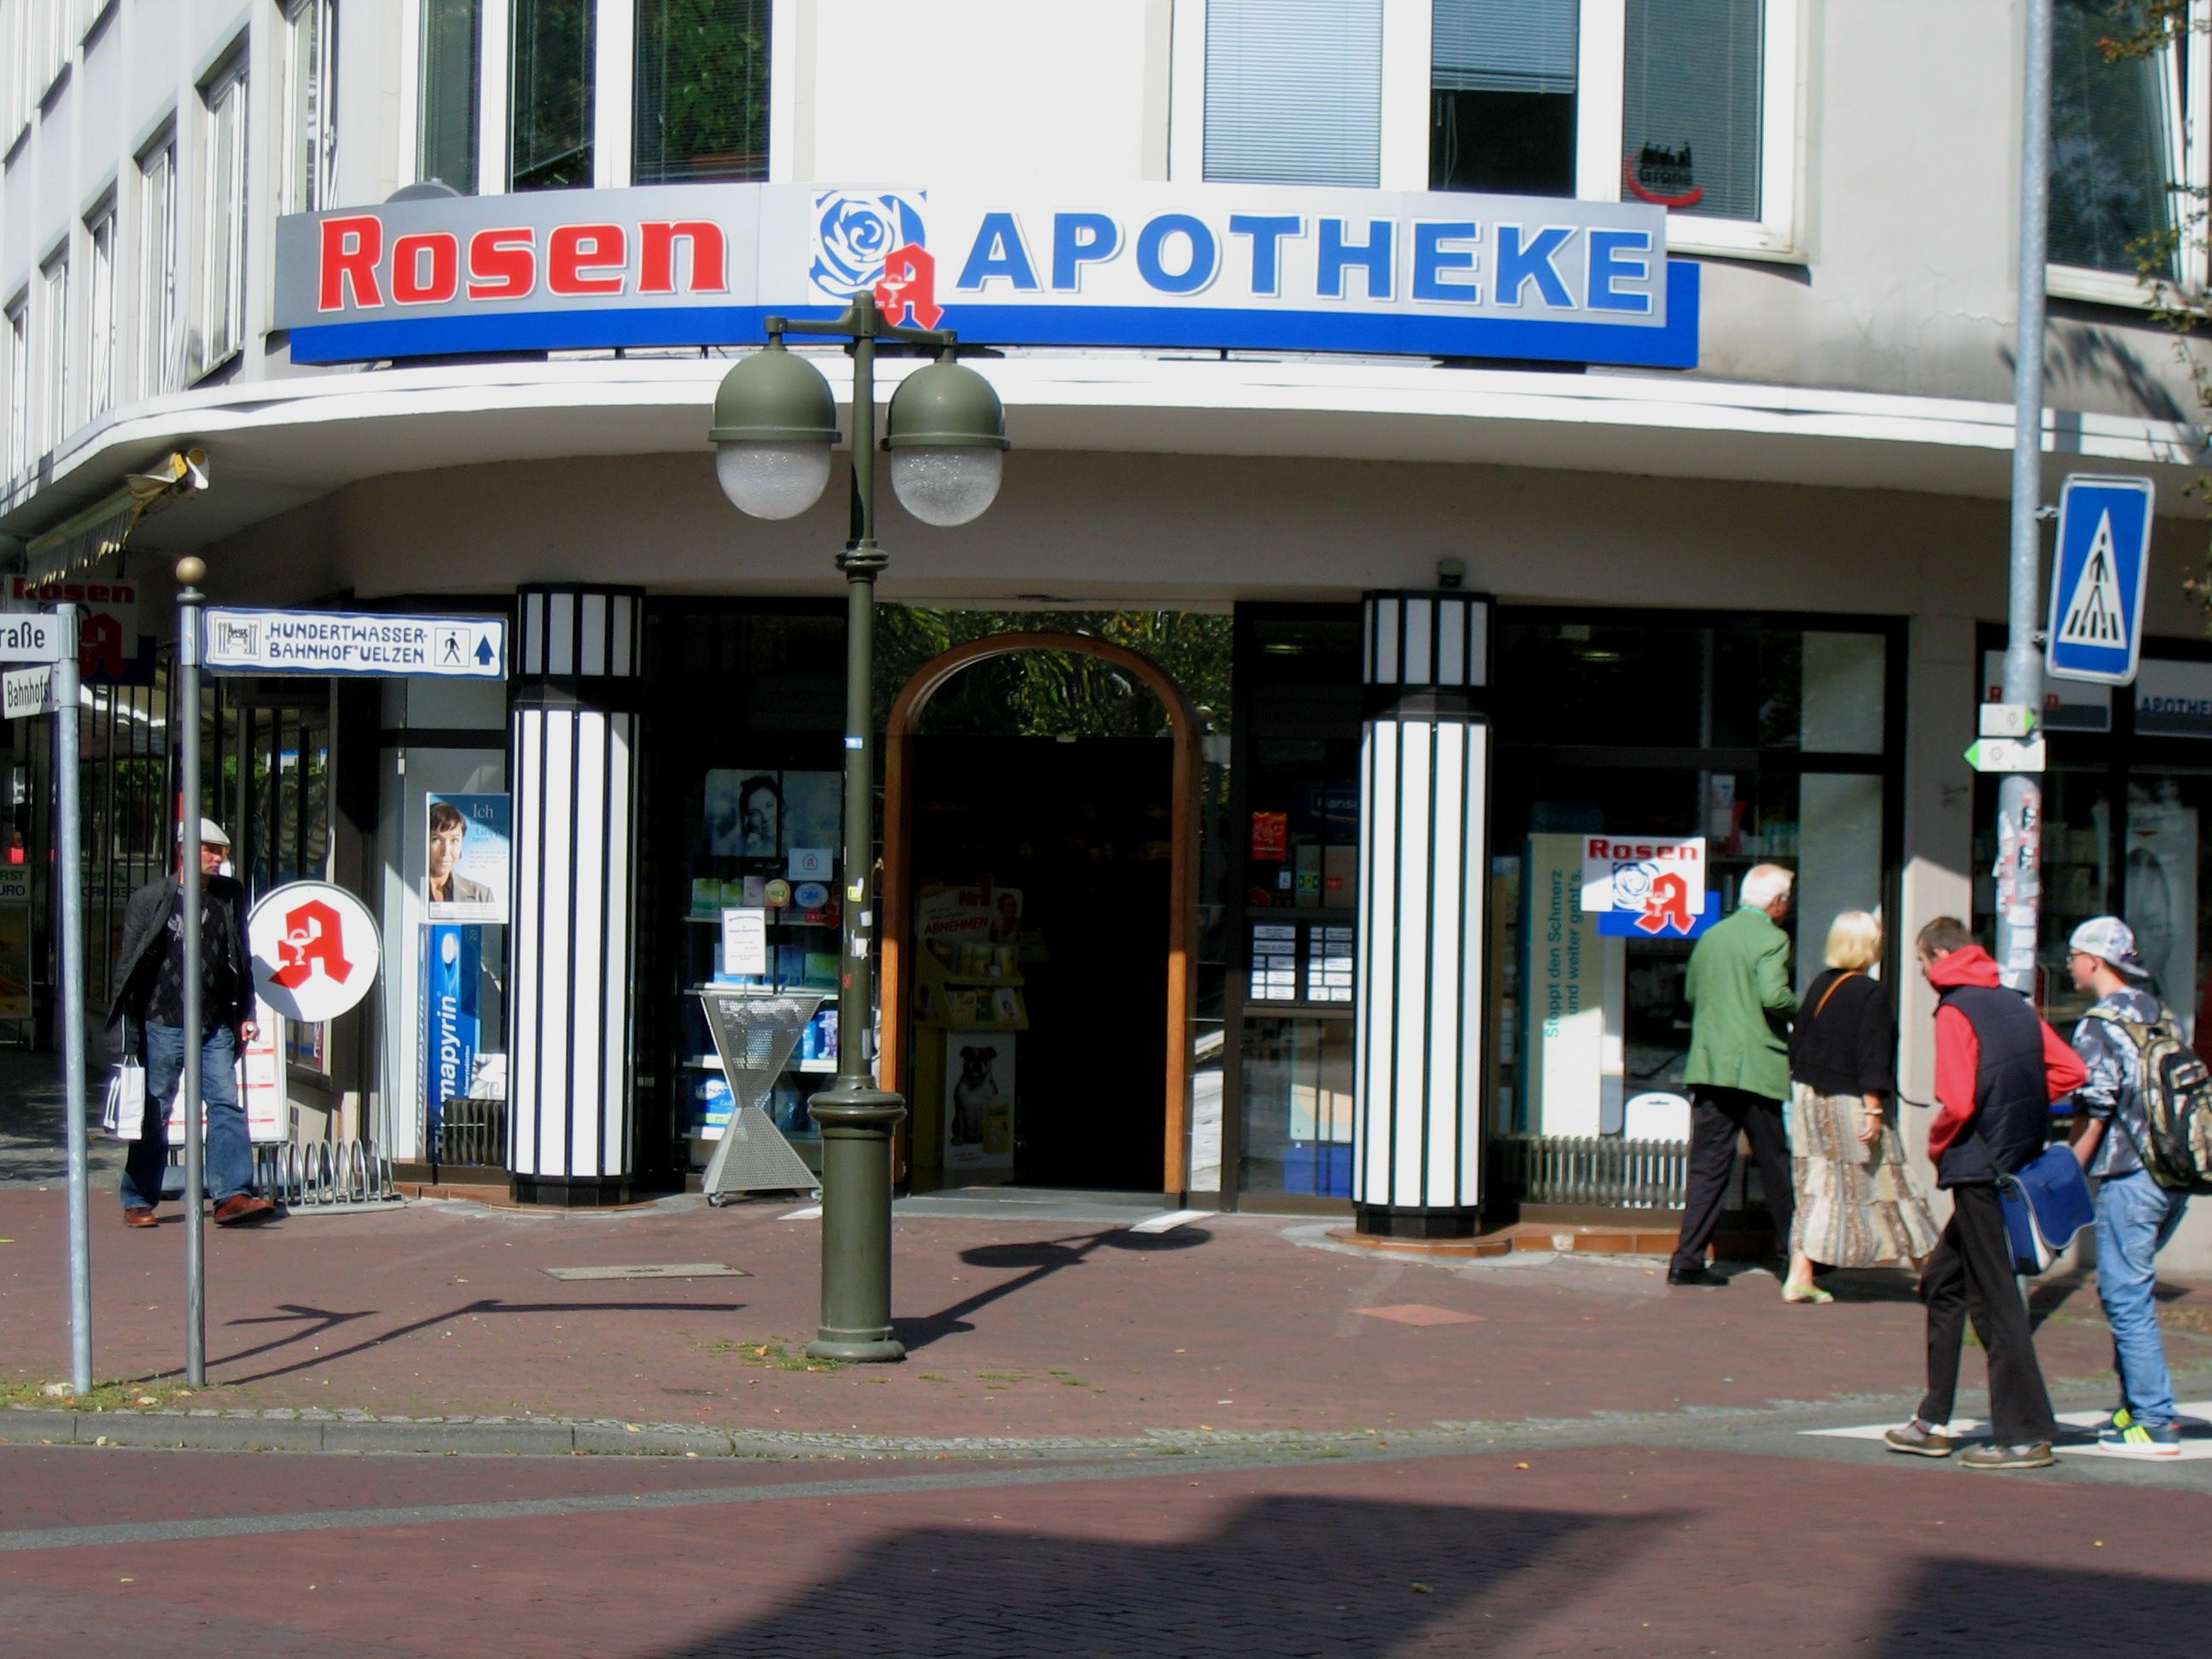 Rosen-Apotheke